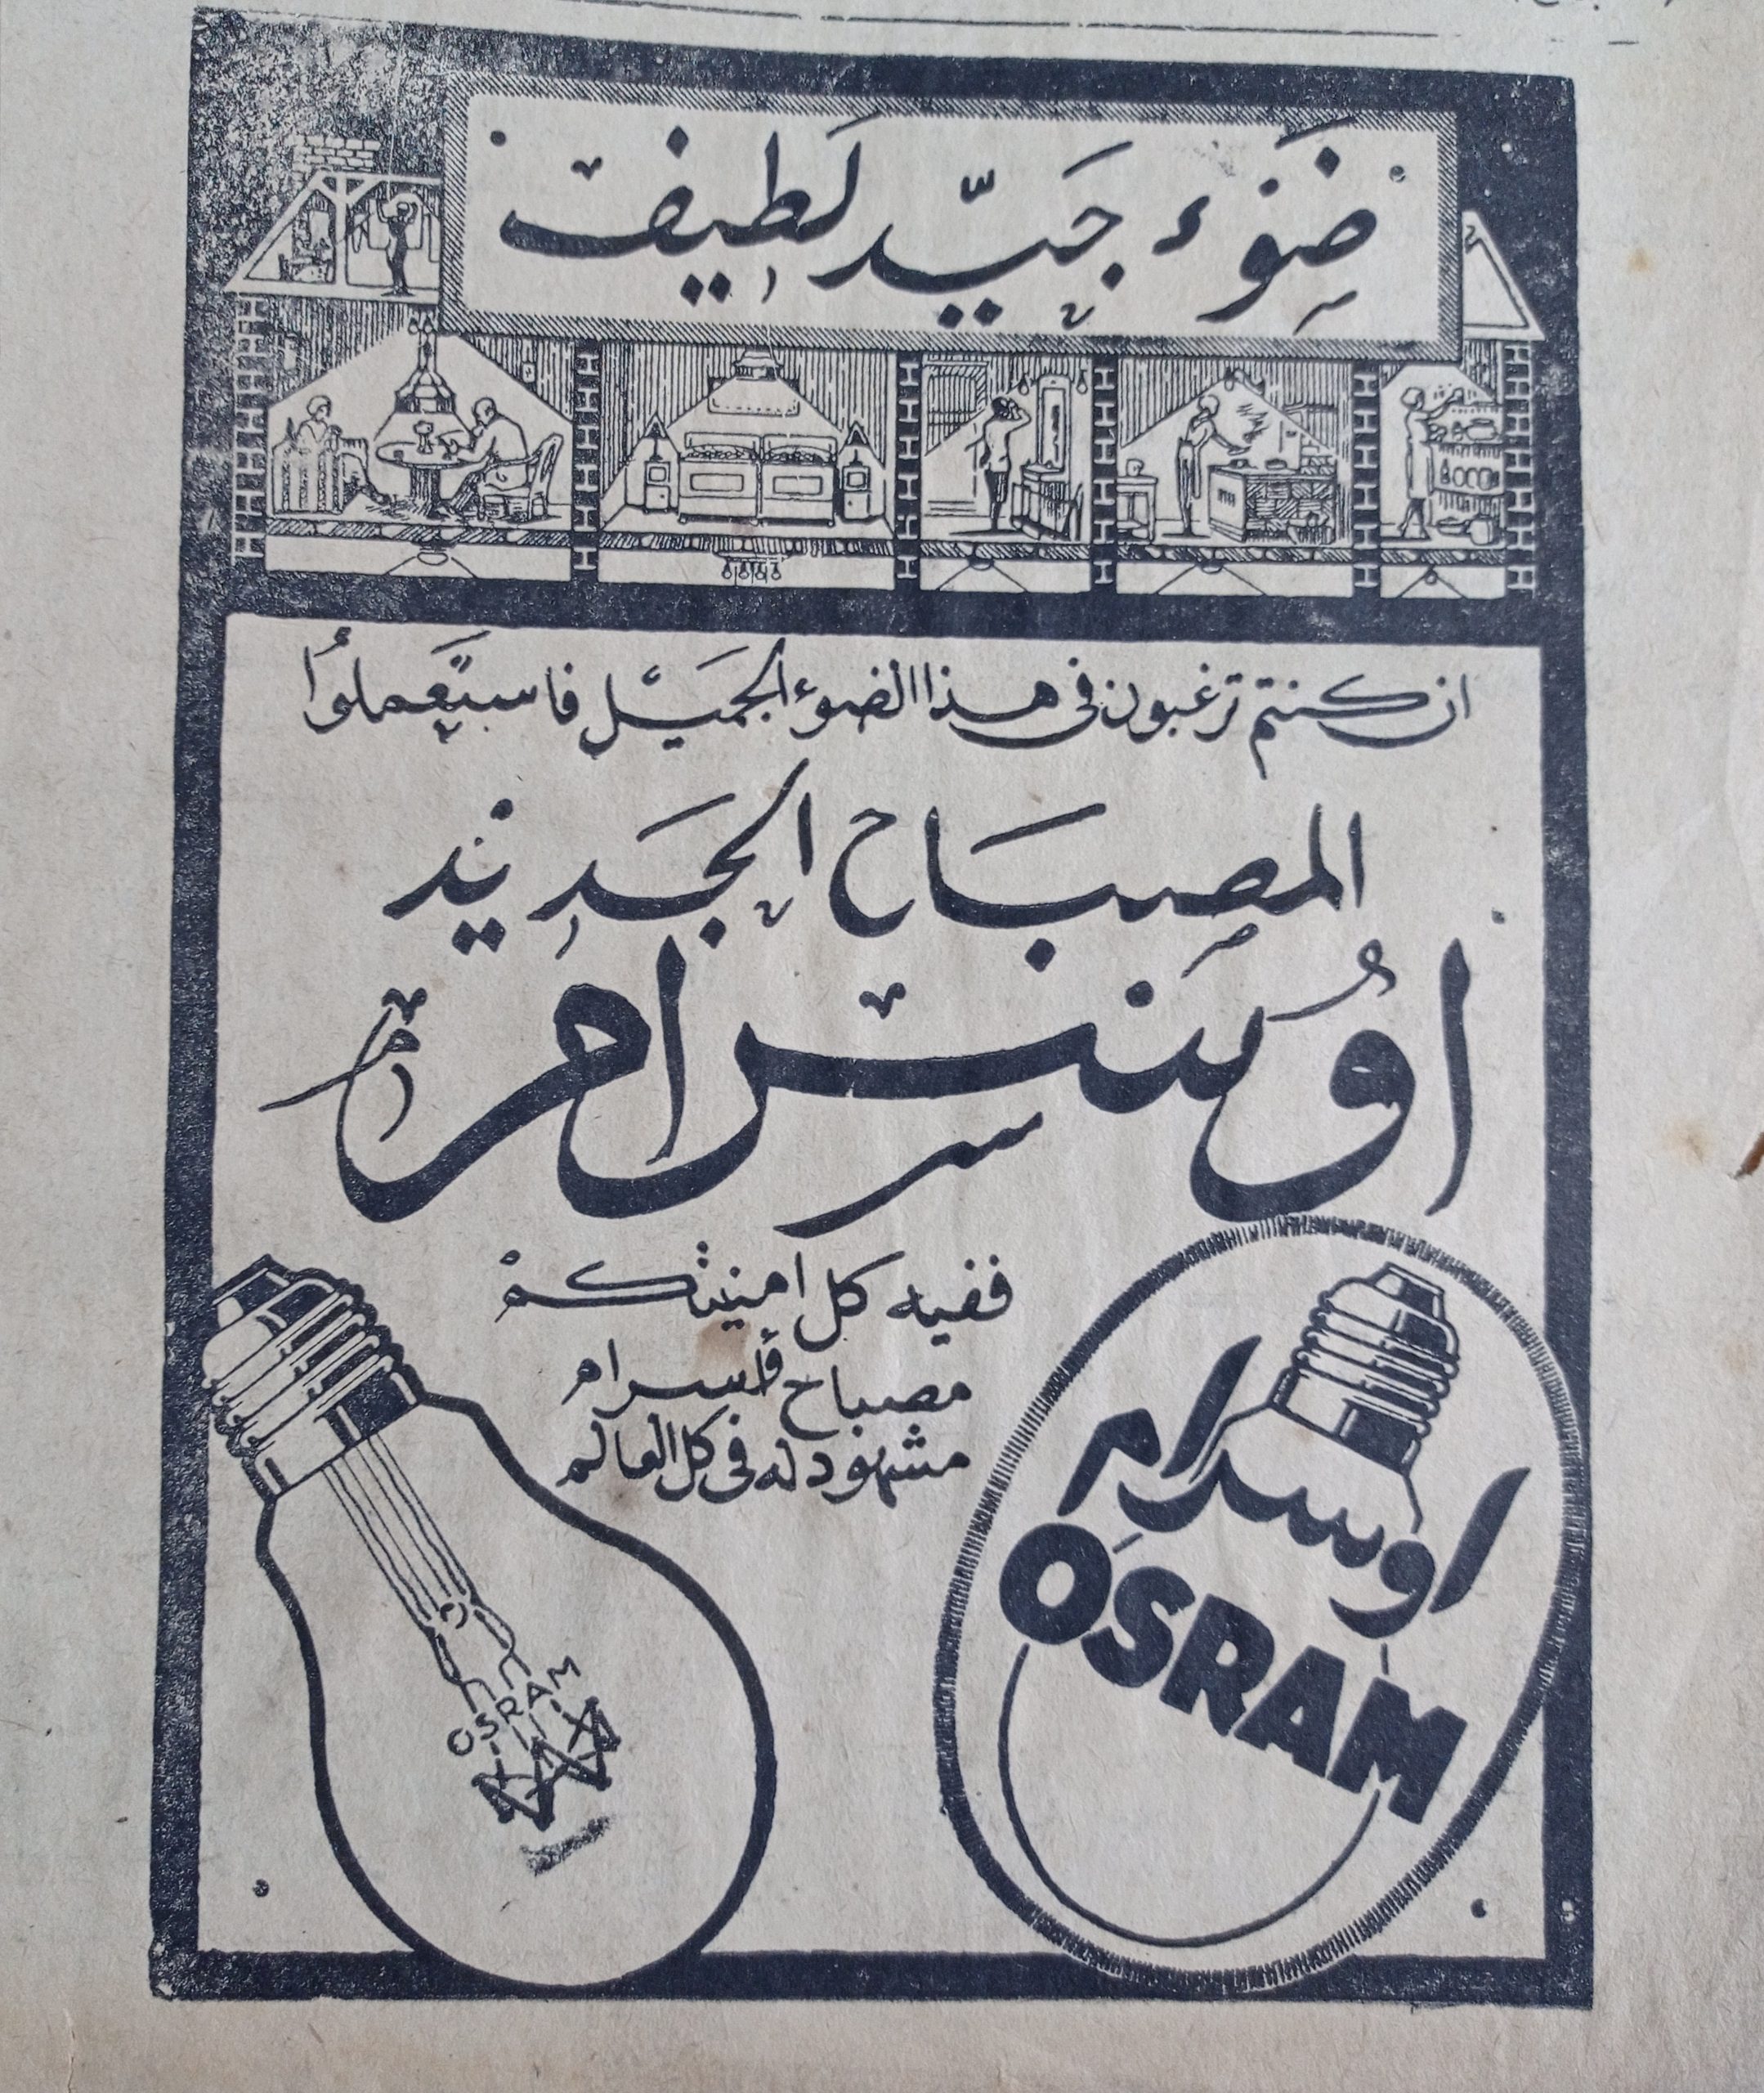 التاريخ السوري المعاصر - إعلان عن مصابيح اوسرام الجديدة في حلب عام 1956